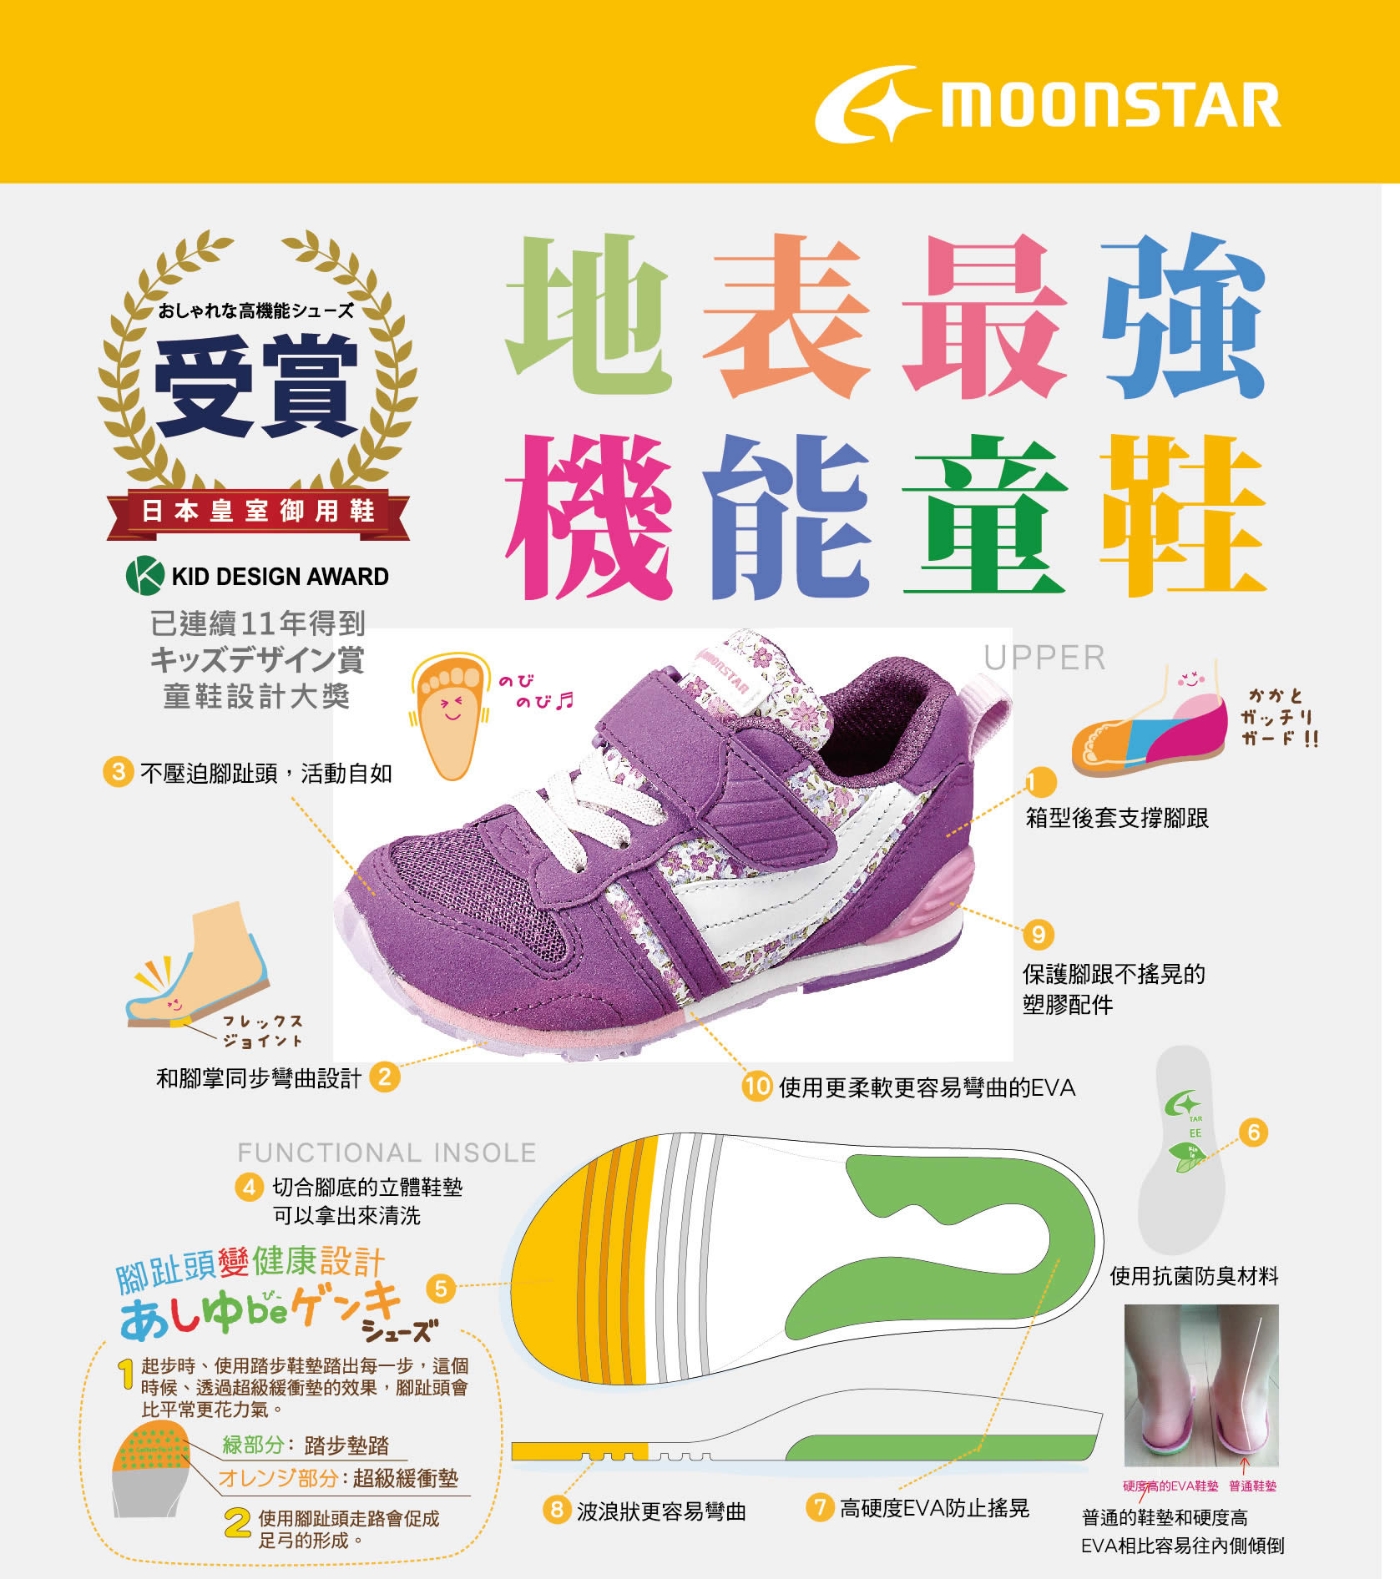 日本月星頂級童鞋 HI系列2E機能款 TW121S6紫紅花(中小童段)